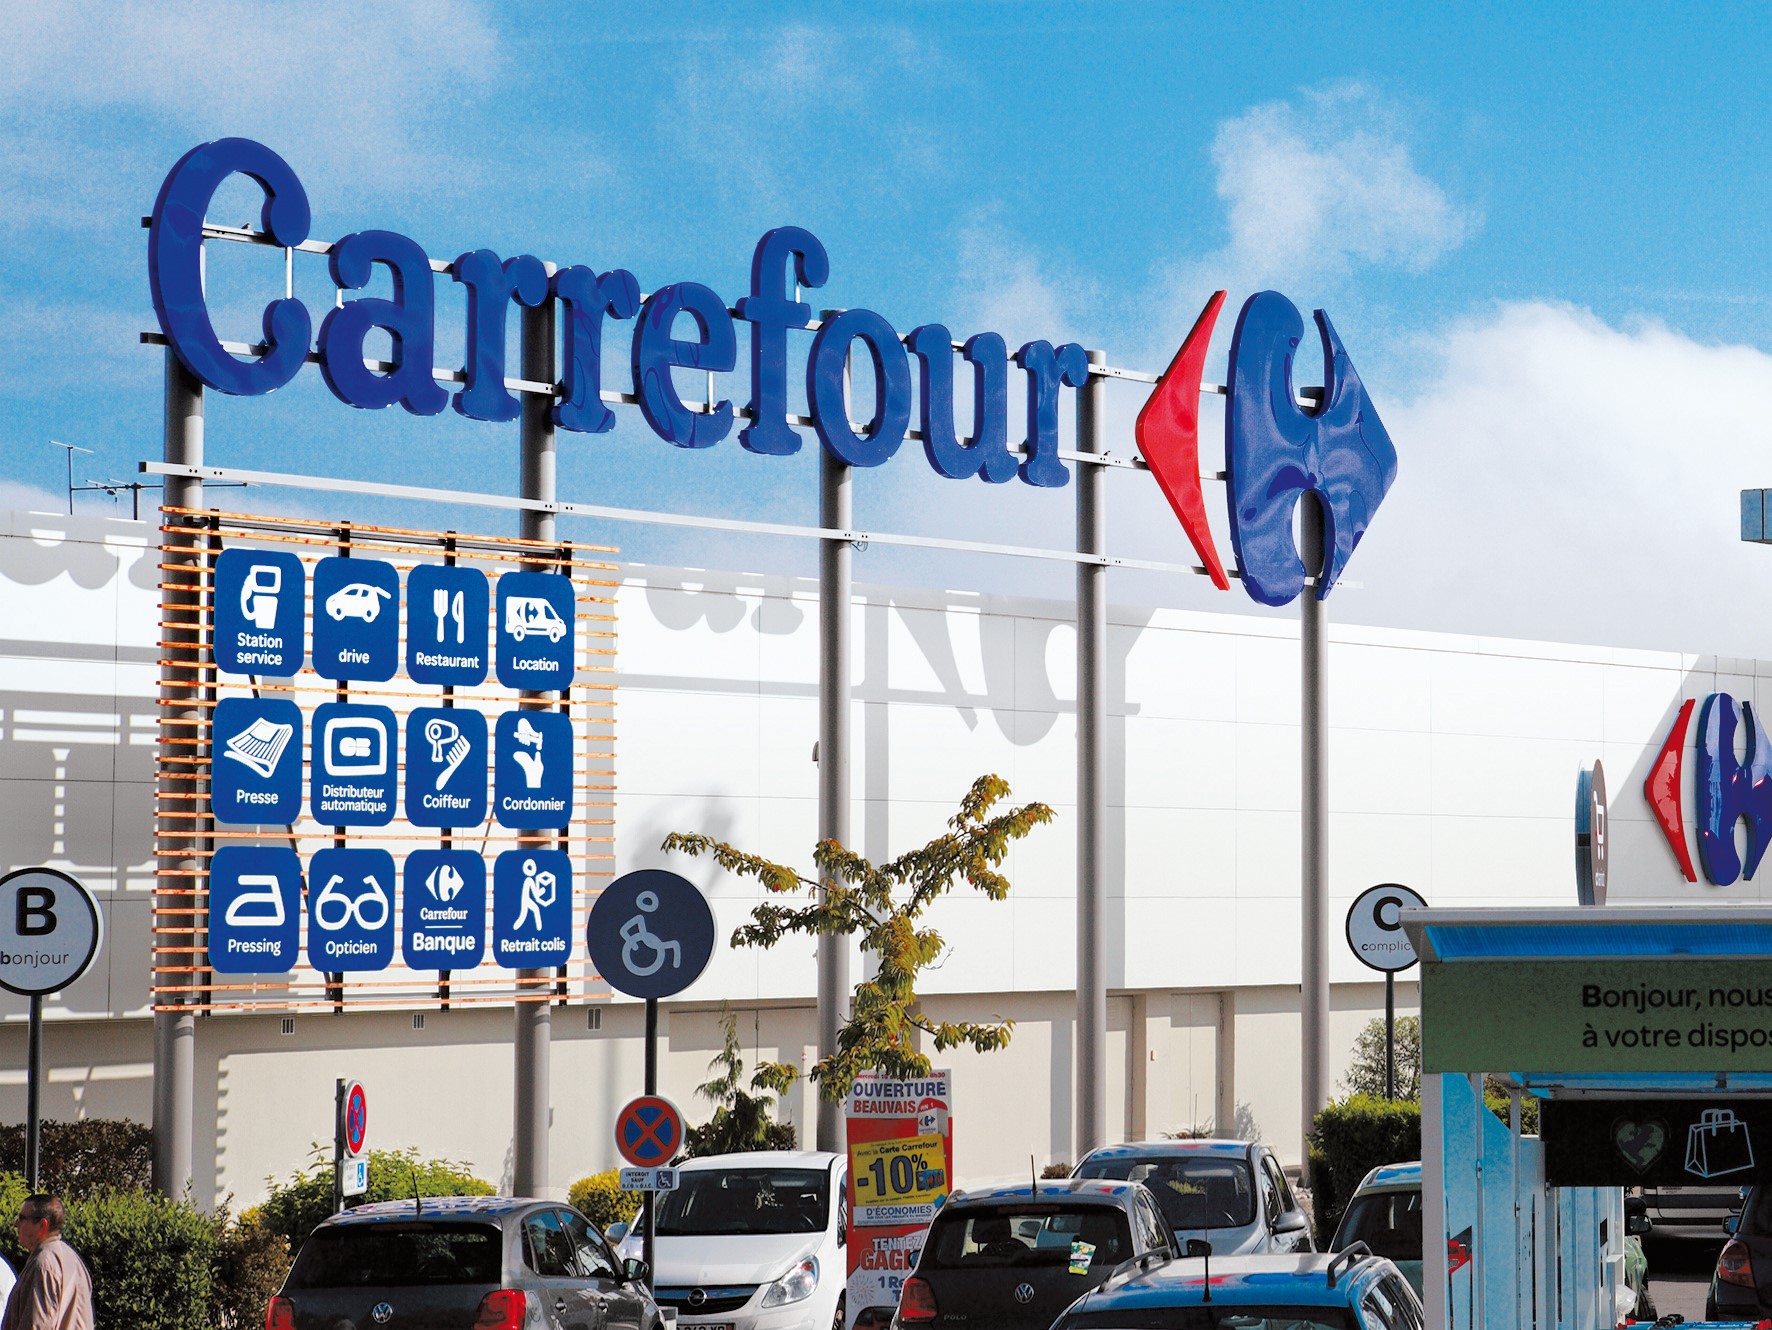 Carrefour România a obţinut afaceri de 2,3 mld. euro în 2020, plus 3,6%. „Faptul că românii din străinătate nu au venit acasă de sărbători a afectat vânzările“. Carrefour a deschis anul trecut, un an marcat de pandemie, 24 de magazine, de două ori mai puţine ca în 2019